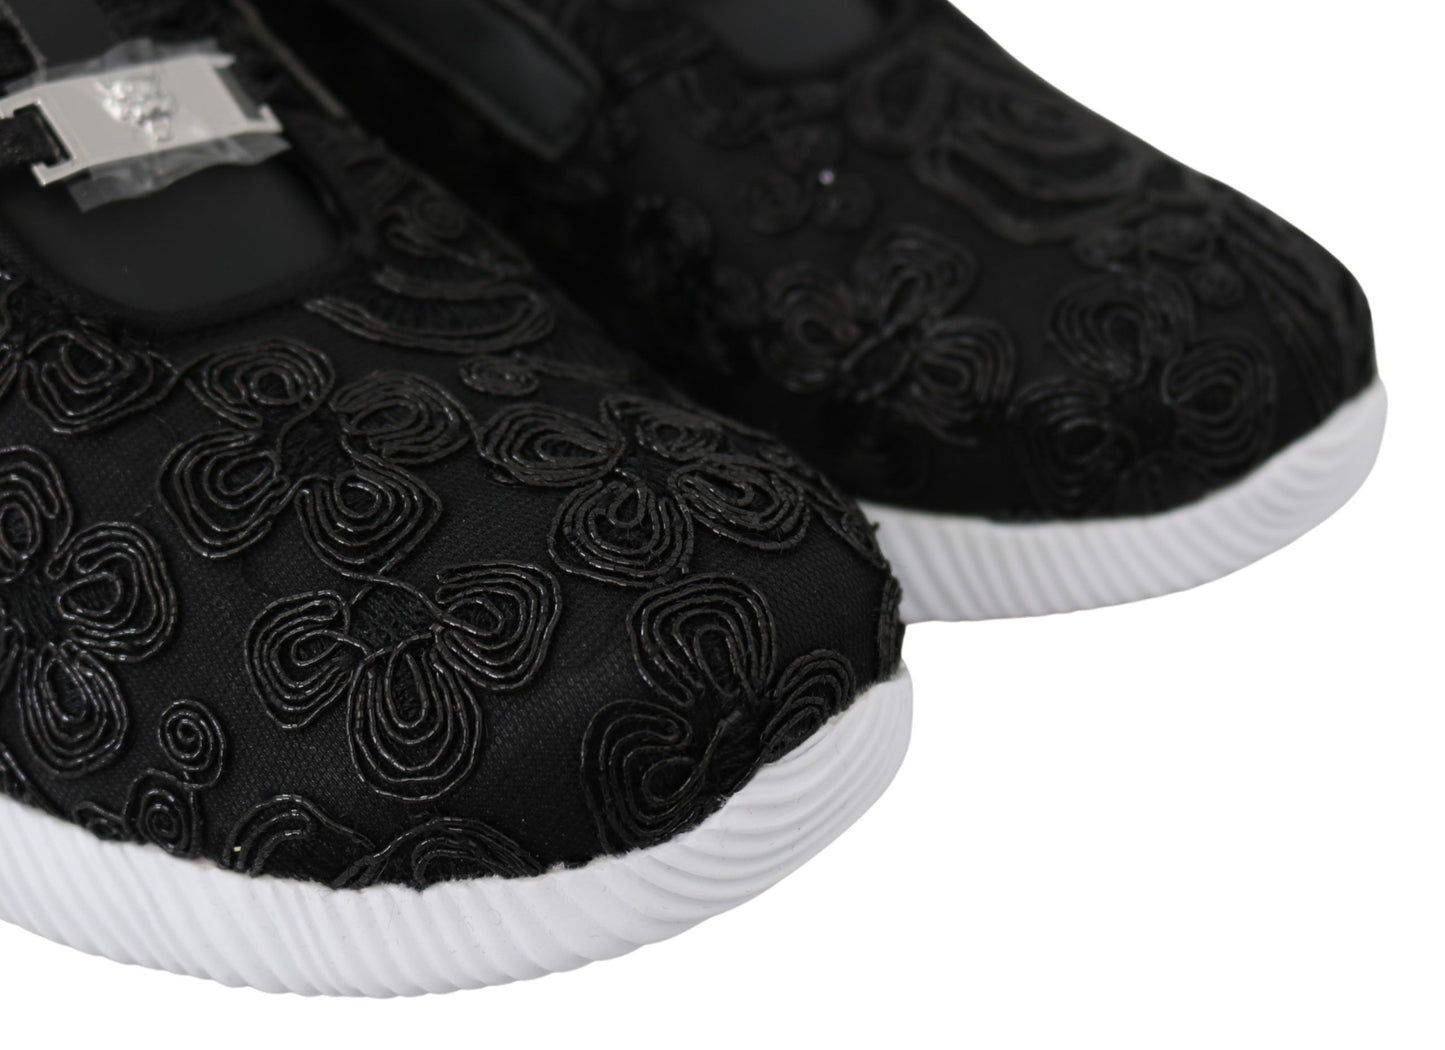 Plein Sport Black Polyester Läufer Joice Sneakers Schuhe